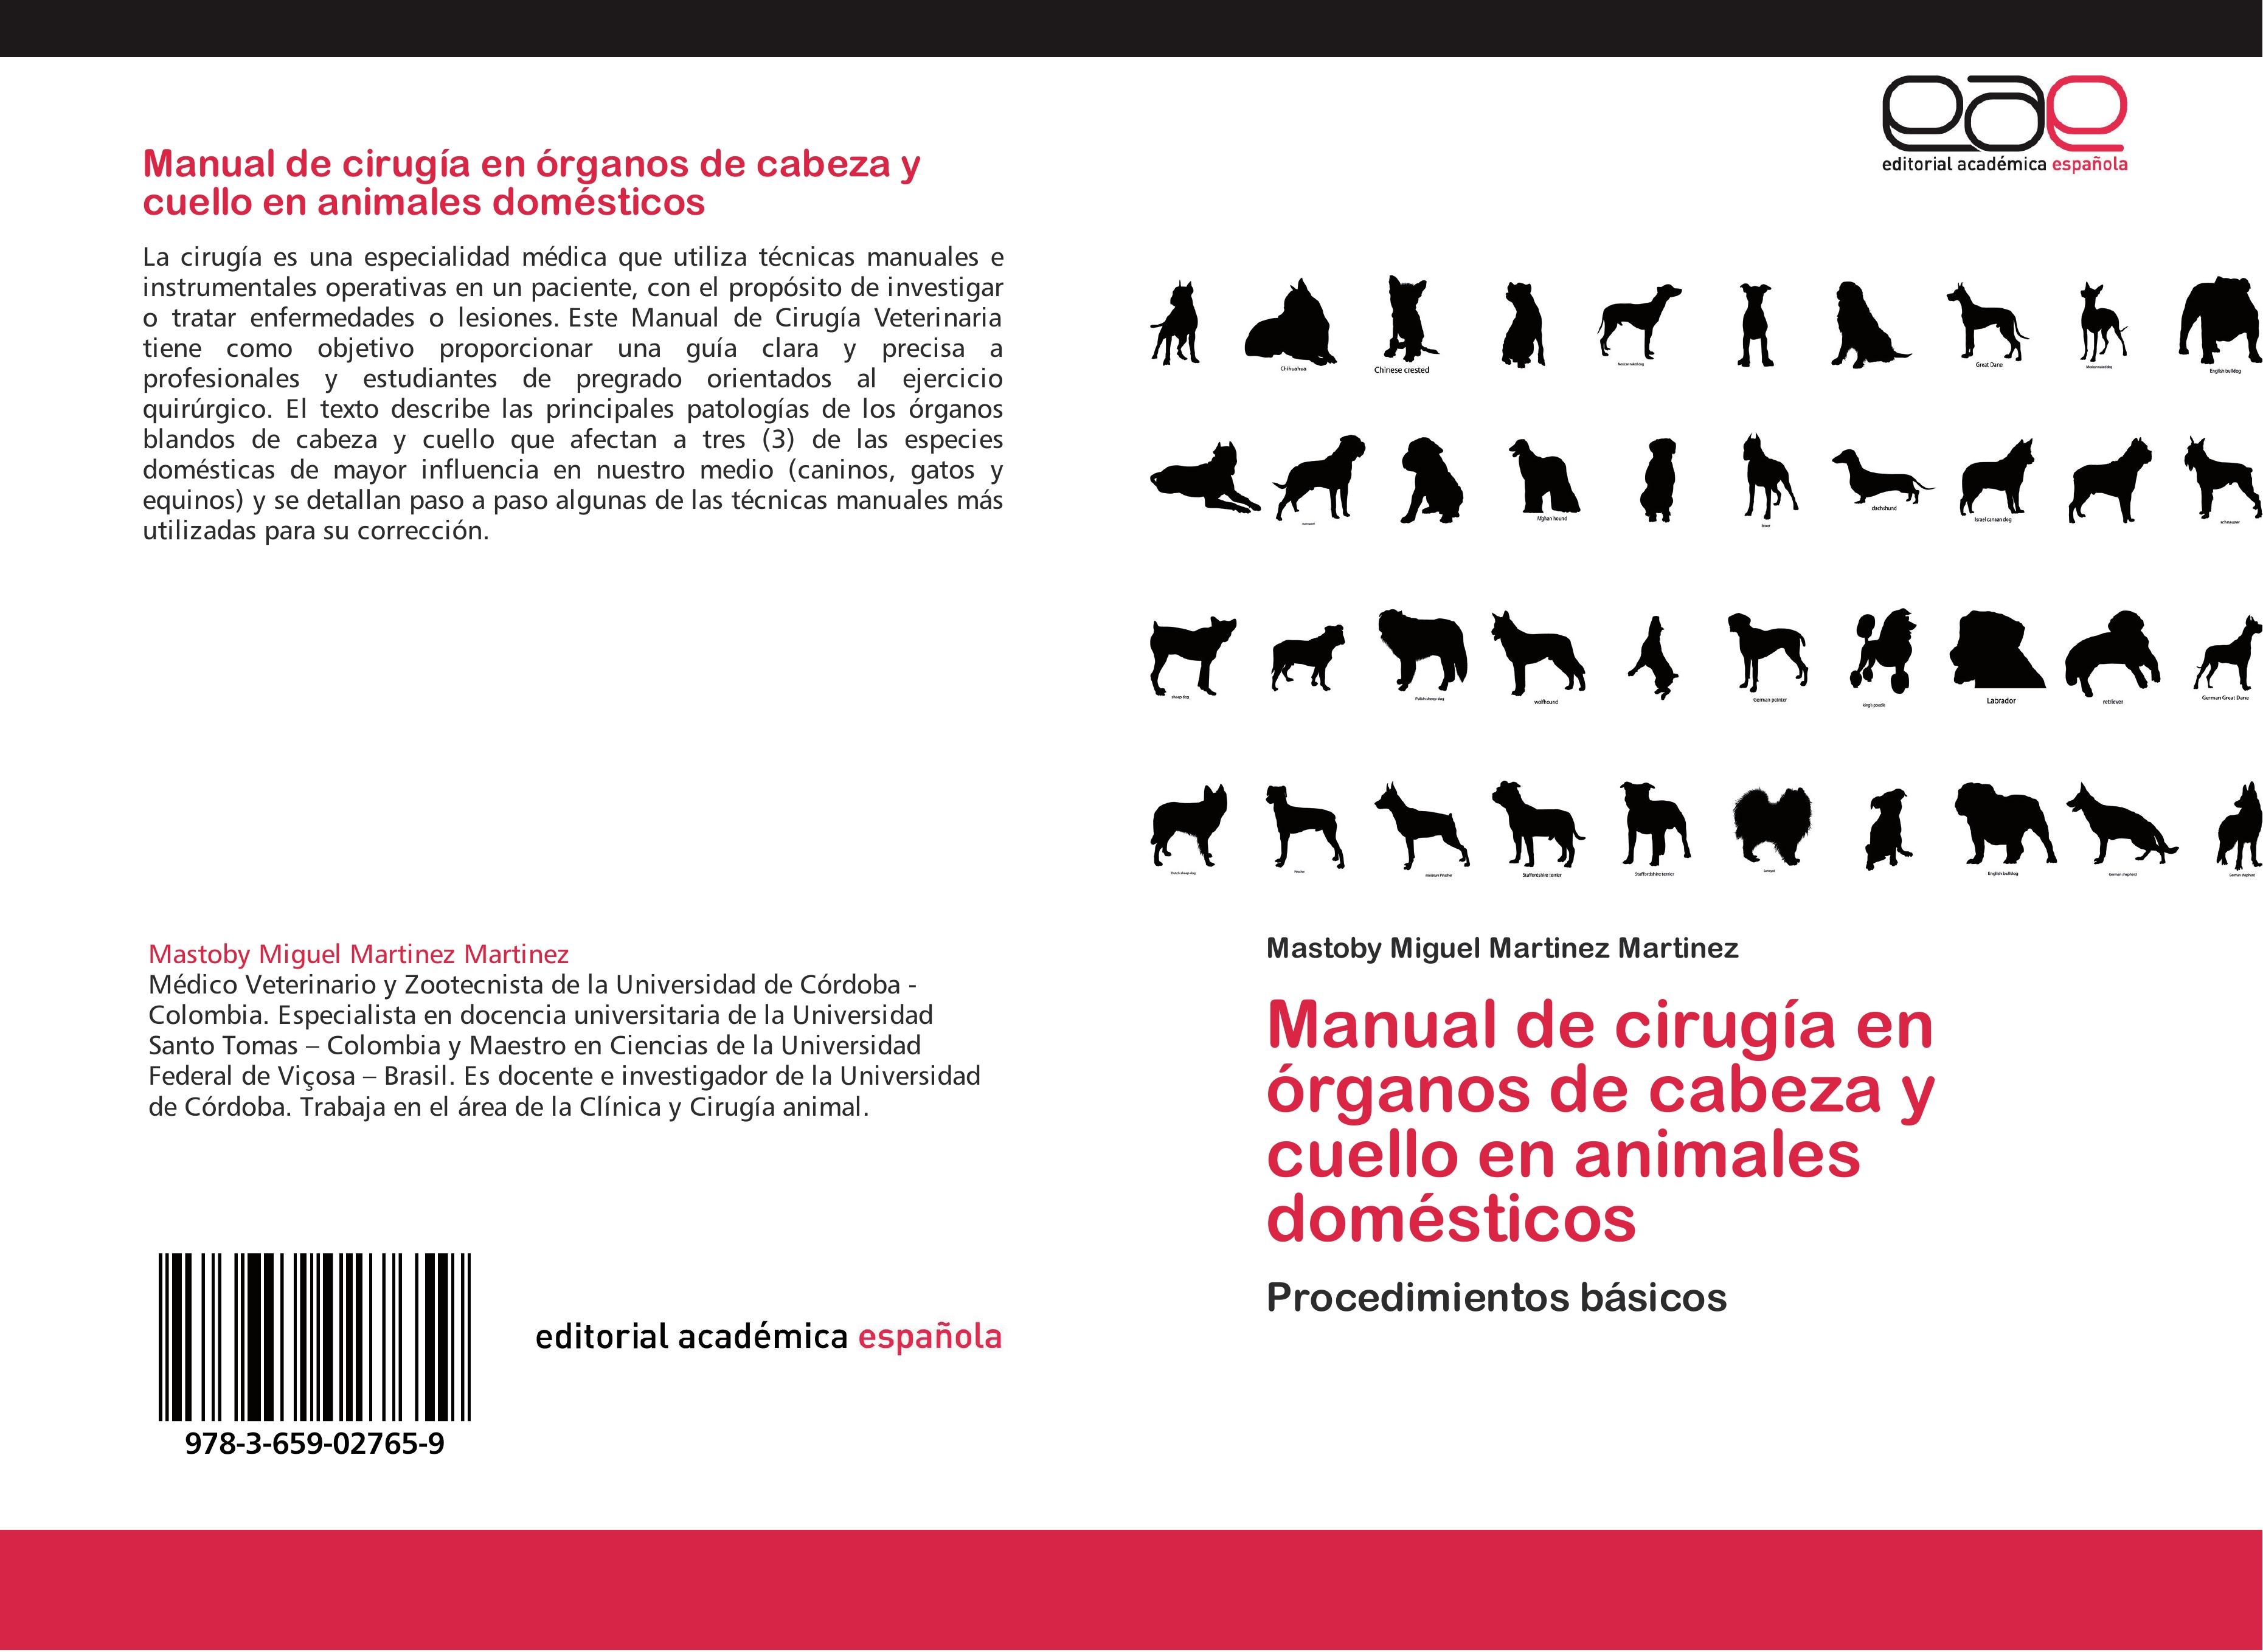 Manual de cirugía en órganos de cabeza y cuello en animales domésticos - Mastoby Miguel Martinez Martinez